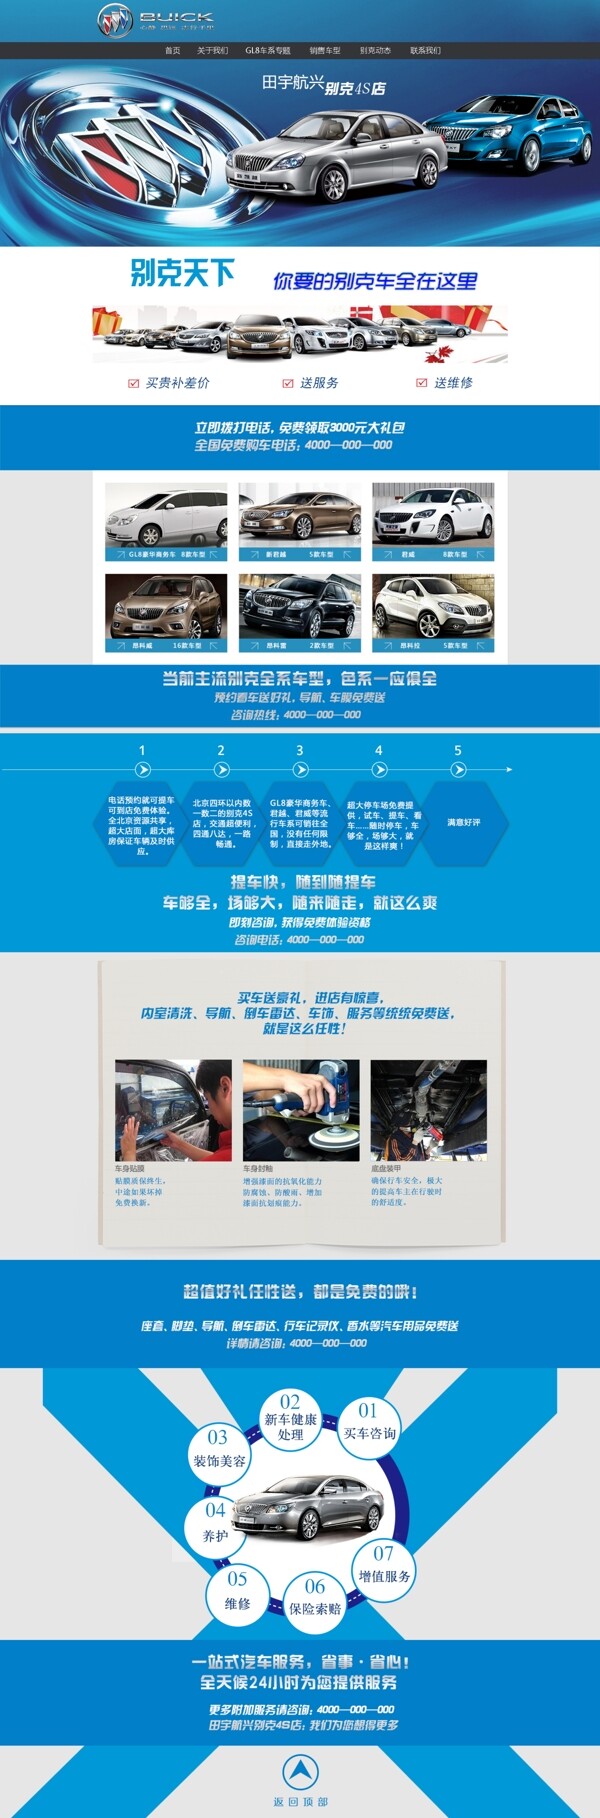 田宇航兴别克4S店网页专题页设计